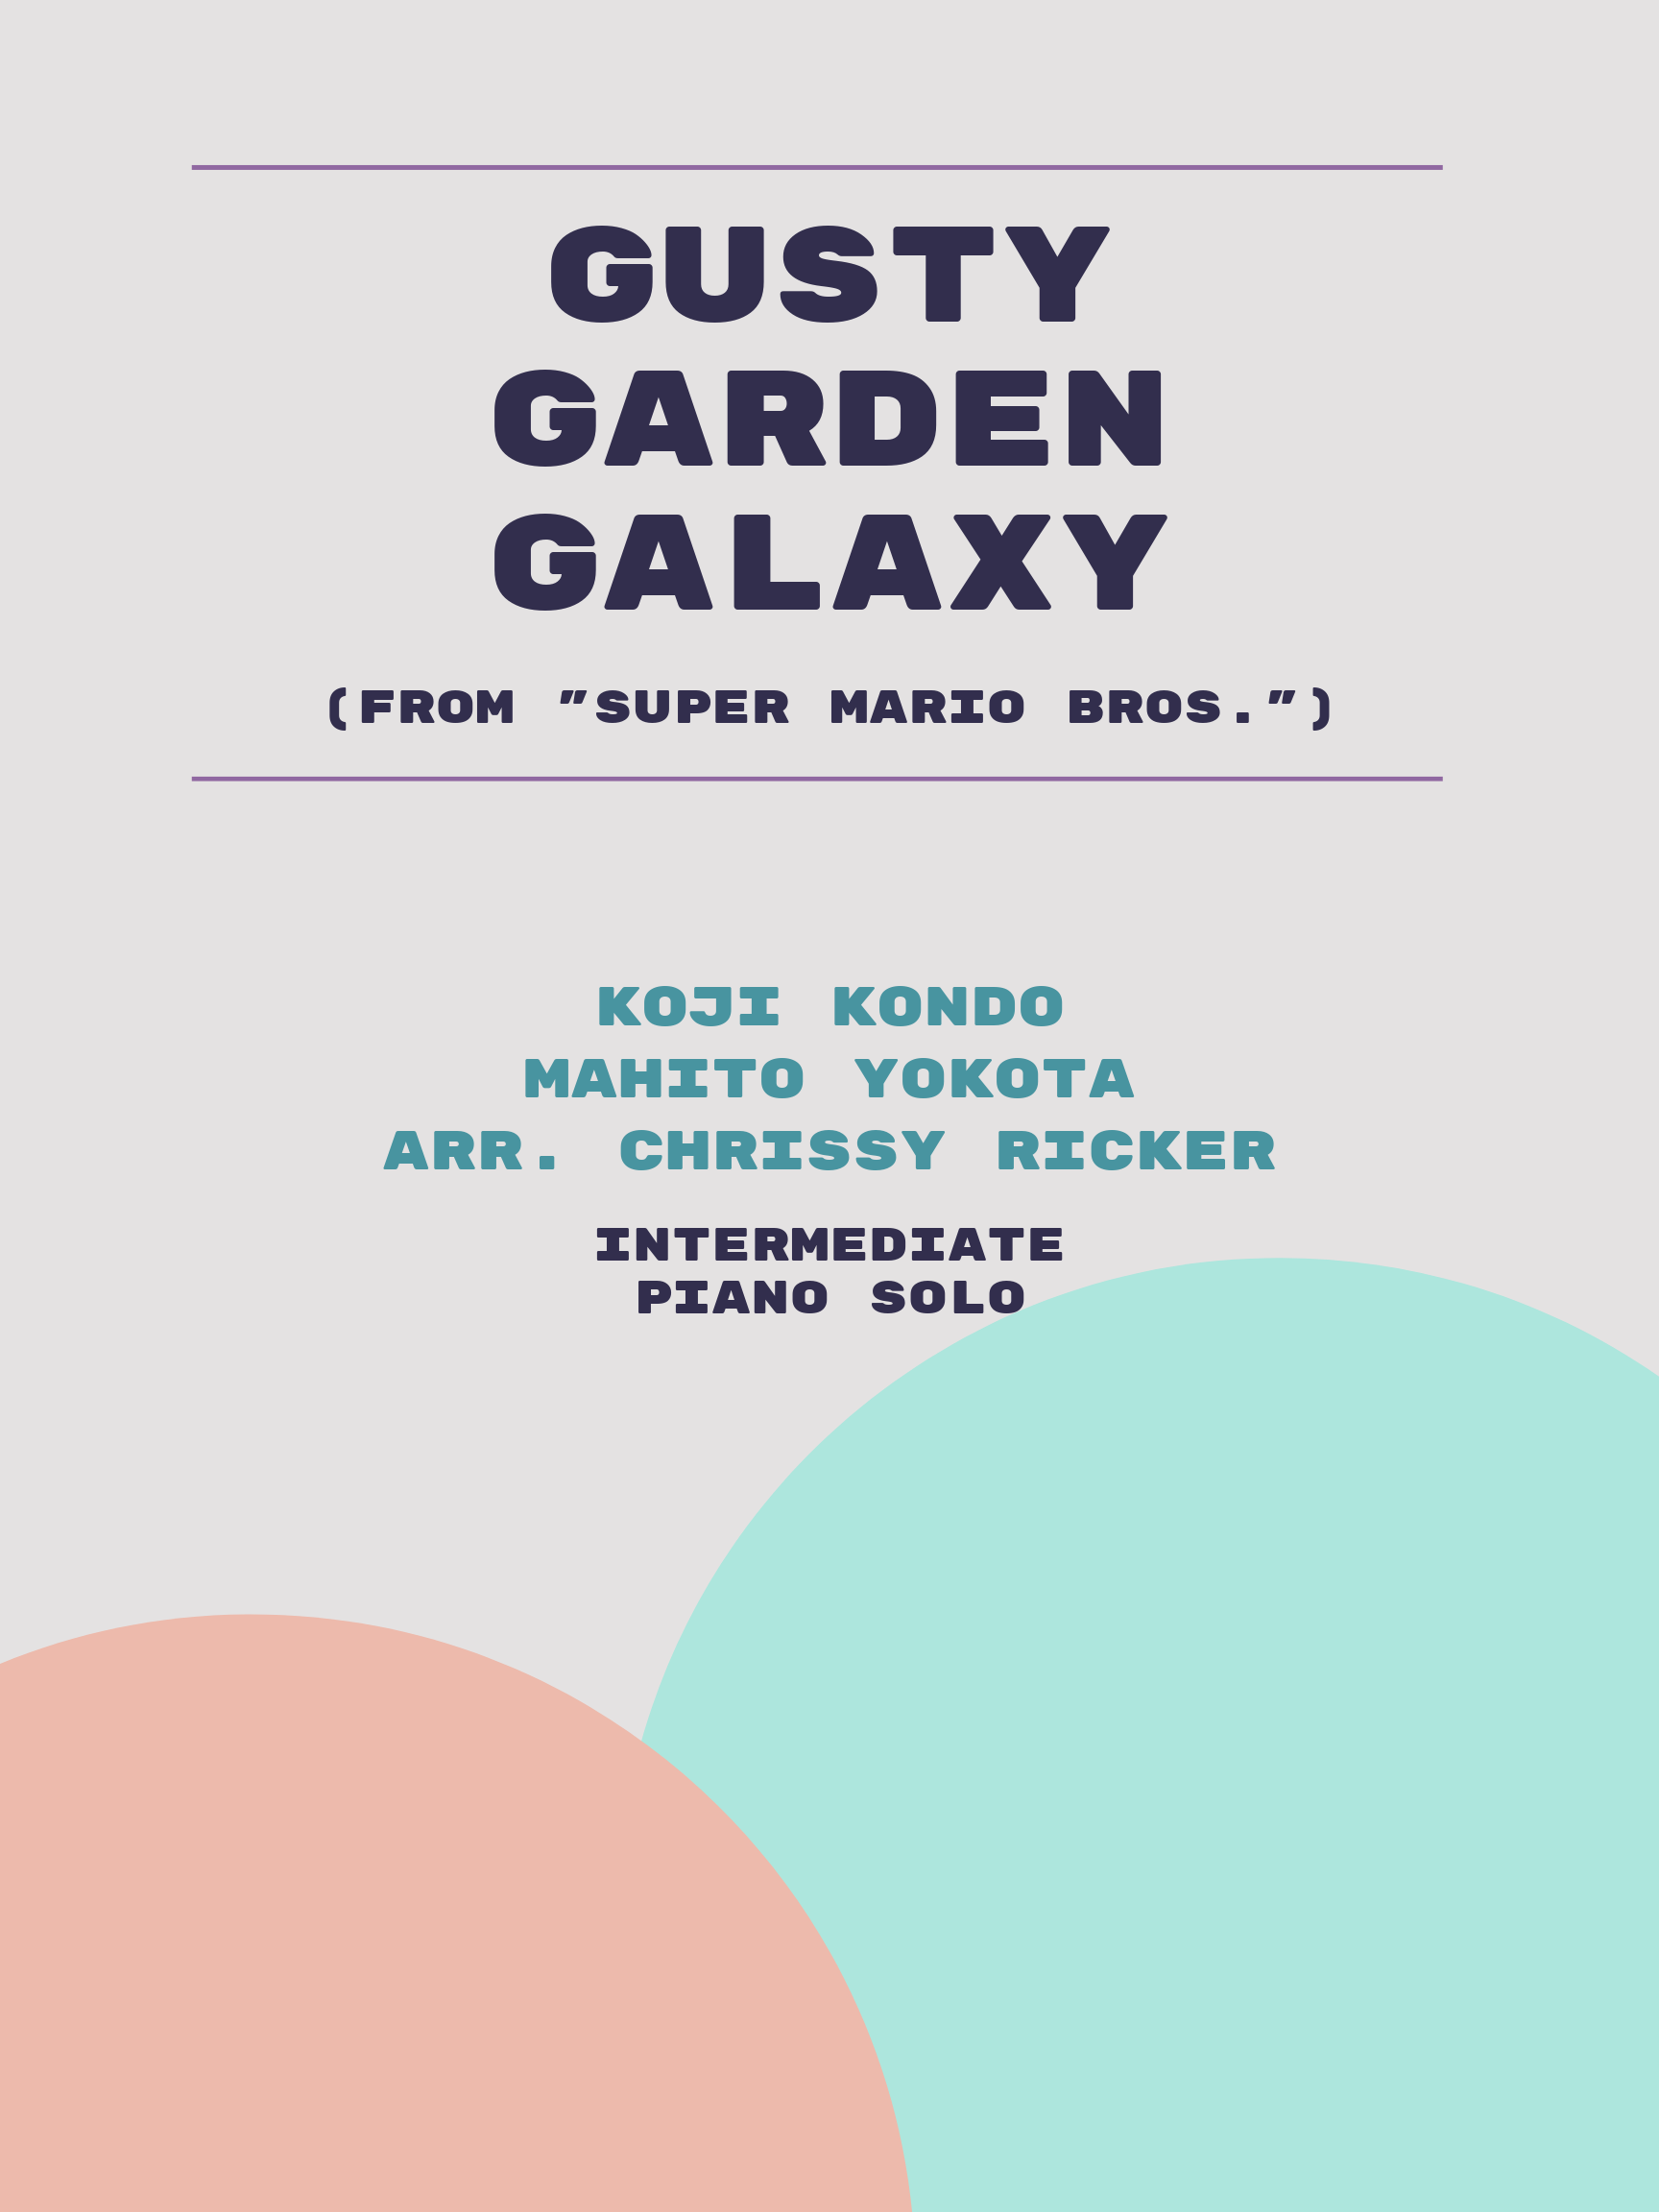 Gusty Garden Galaxy by Koji Kondo, Mahito Yokota